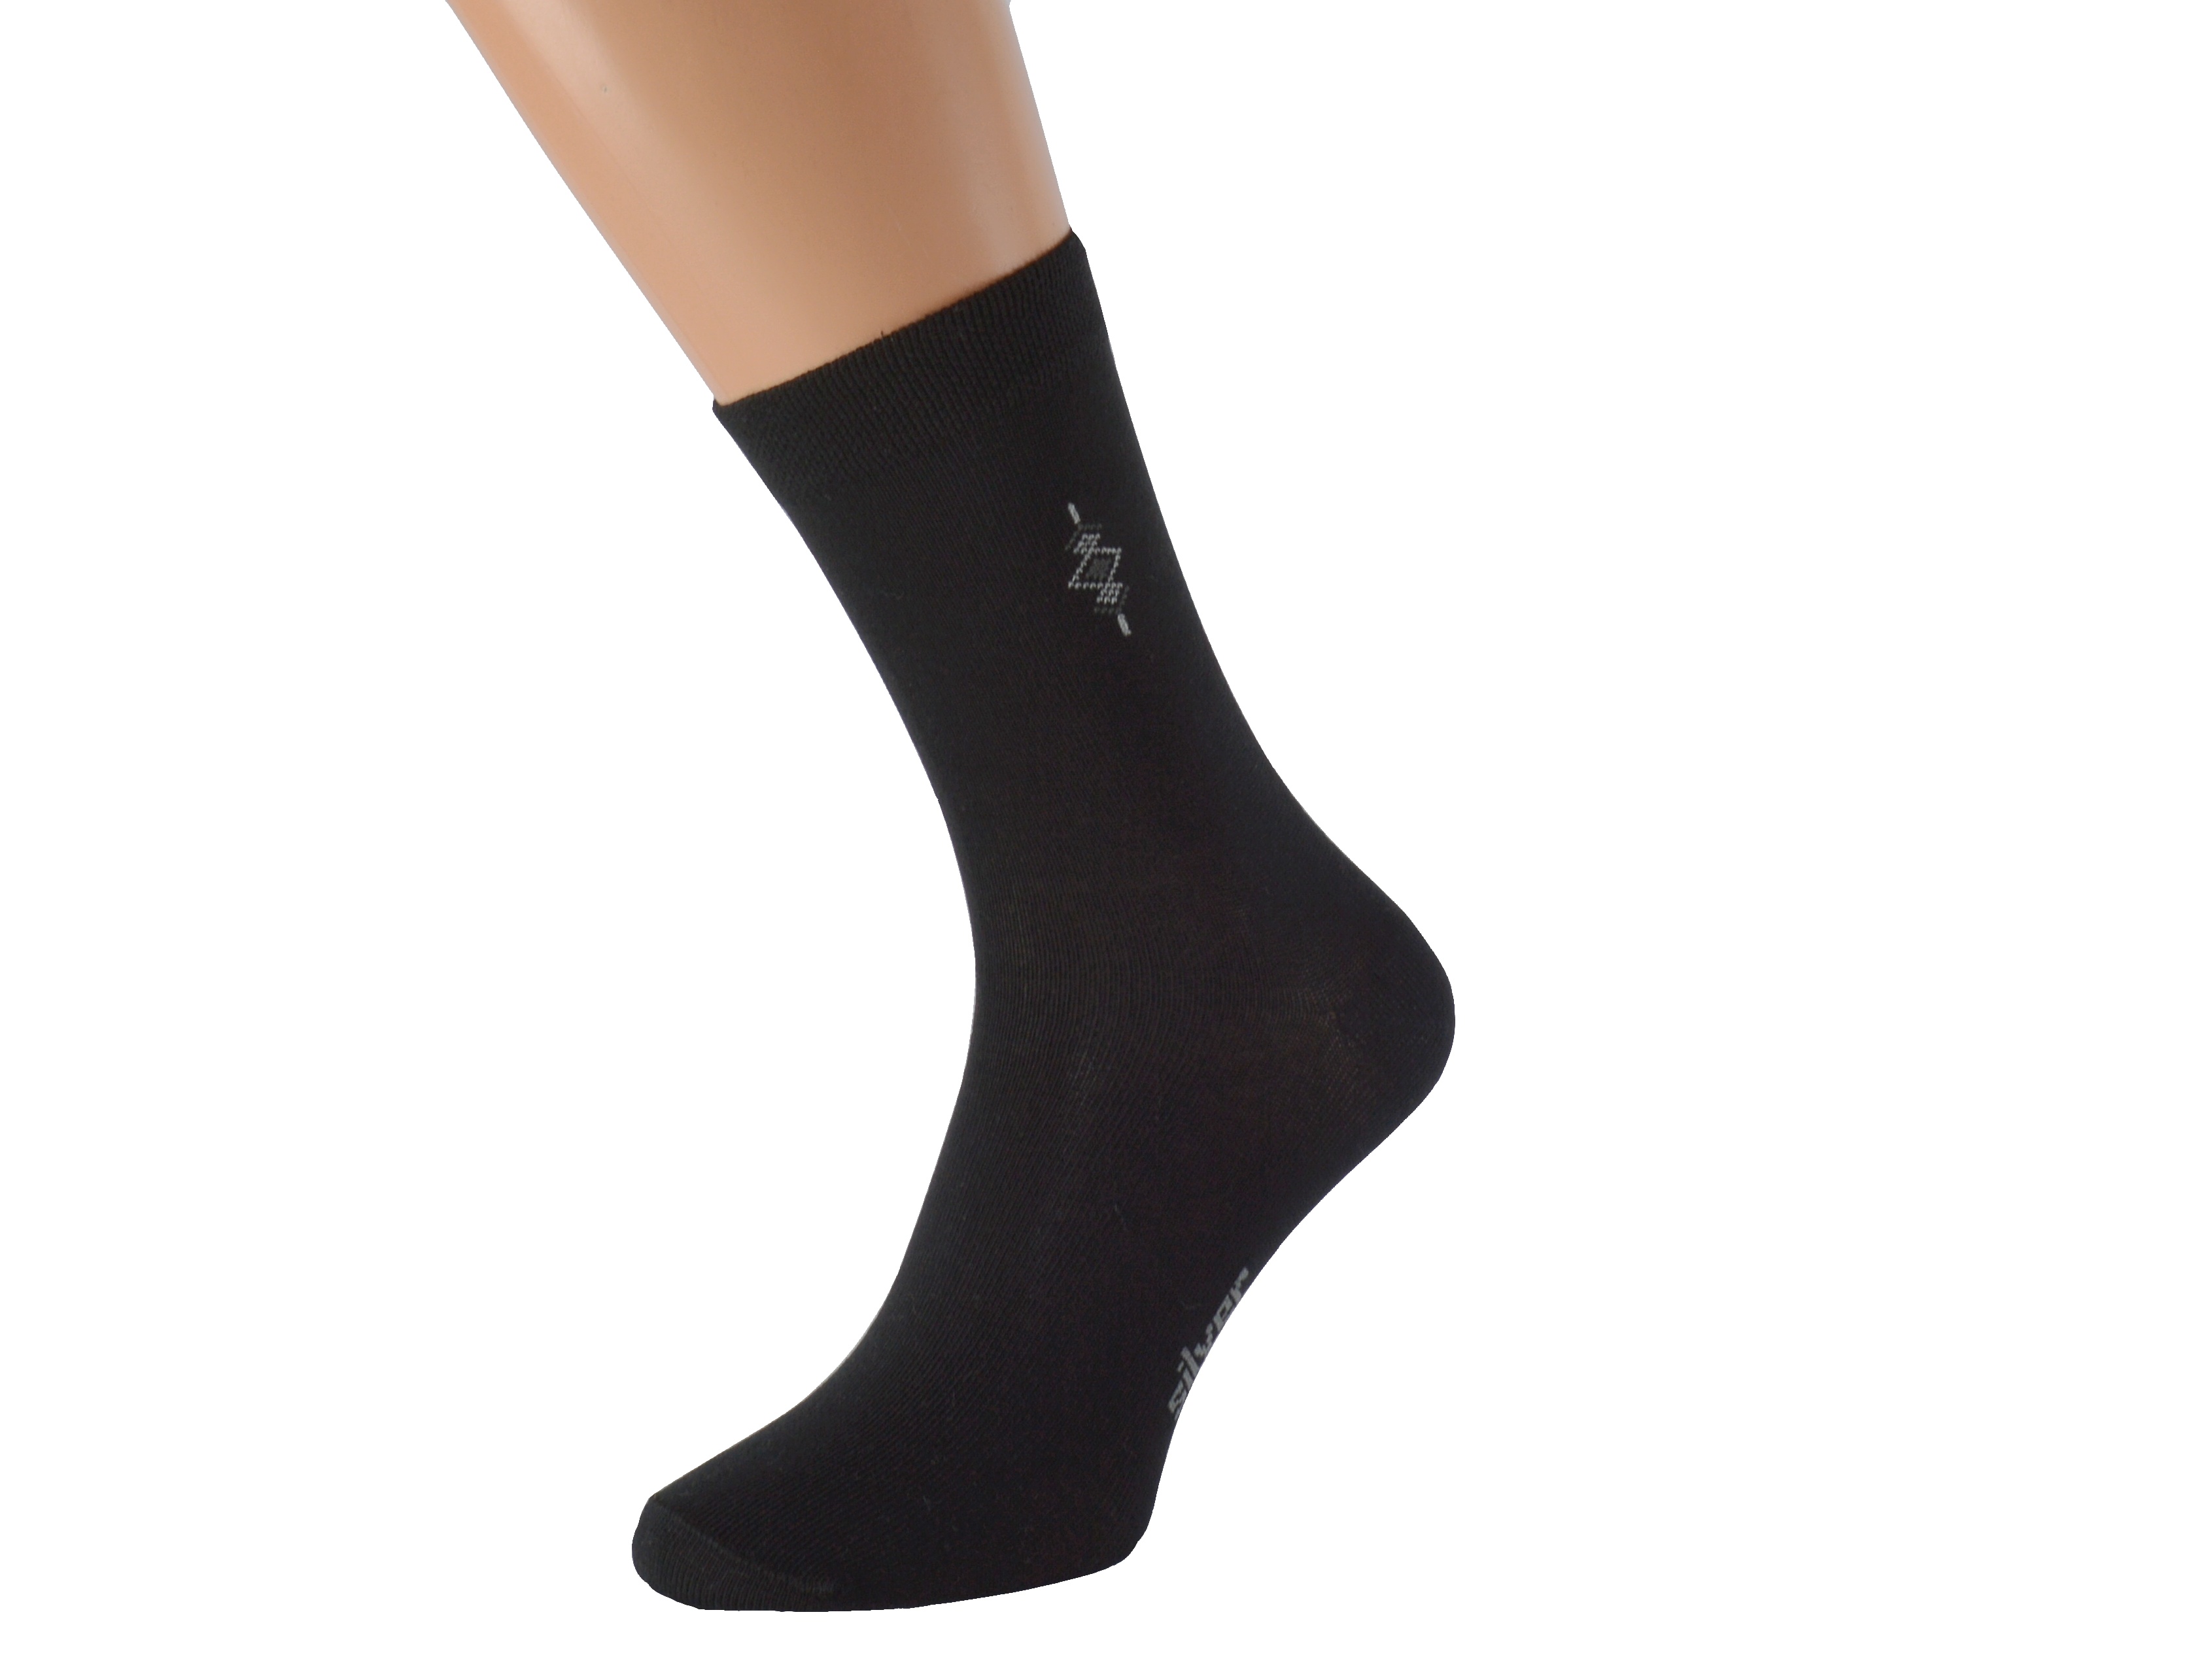 Antibakteriální ponožky se stříbrem BOBOLYC KUKS Barva: Černé, Velikost: EUR 43-46 (UK 9-11)